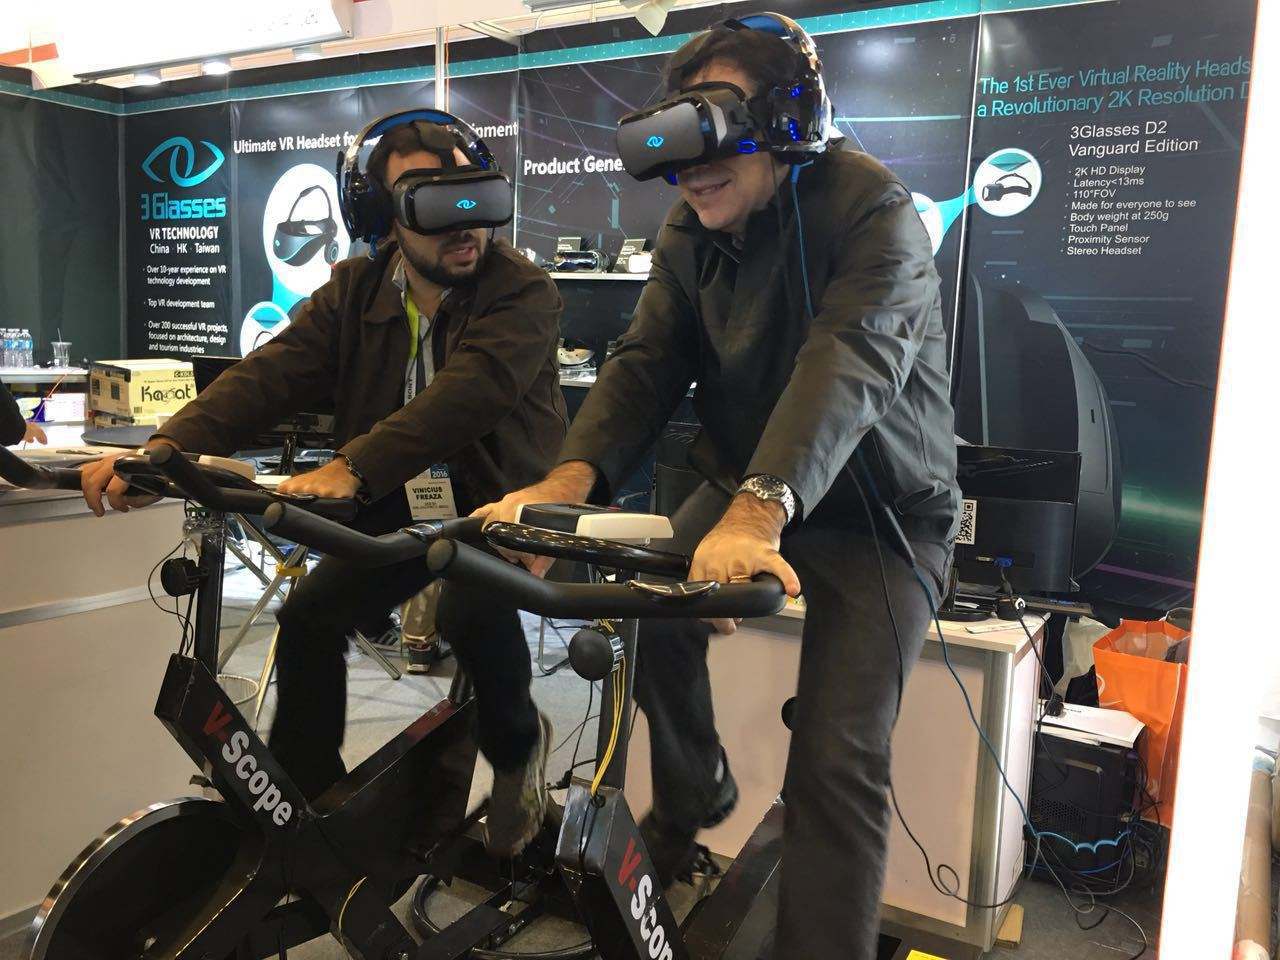 VR健身车 高端新科技虚拟世界互动设备出租 暖场互动设备 娱乐暖场活动专用 众暖熊 高端道具互动出租 暖场设备出售